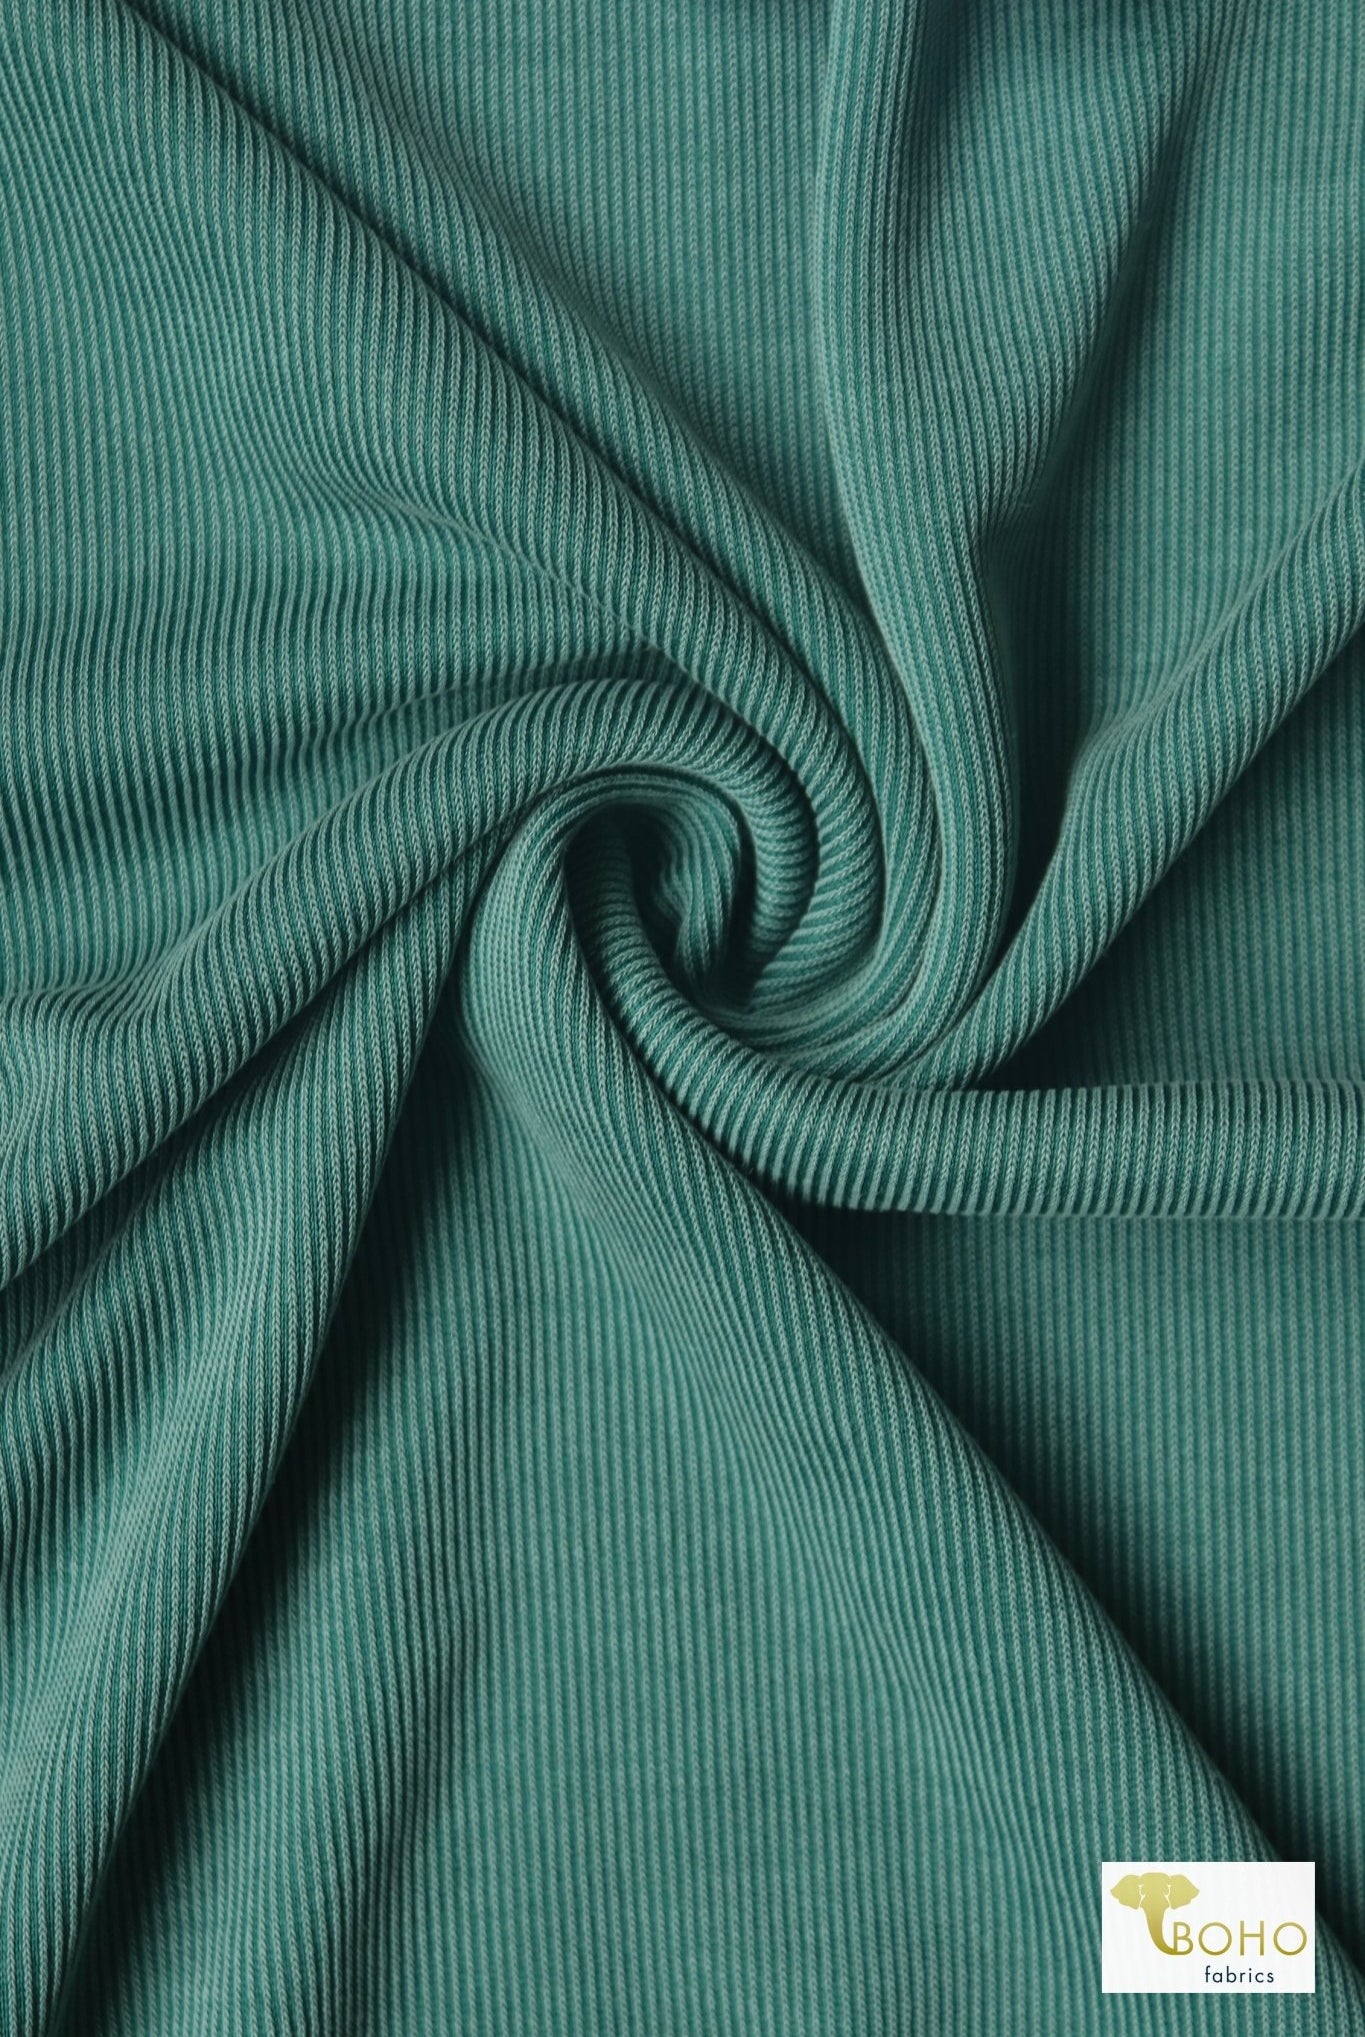 Mist Green, Cupro Rib Knit Fabric - Boho Fabrics - Cupro, Knit Fabric